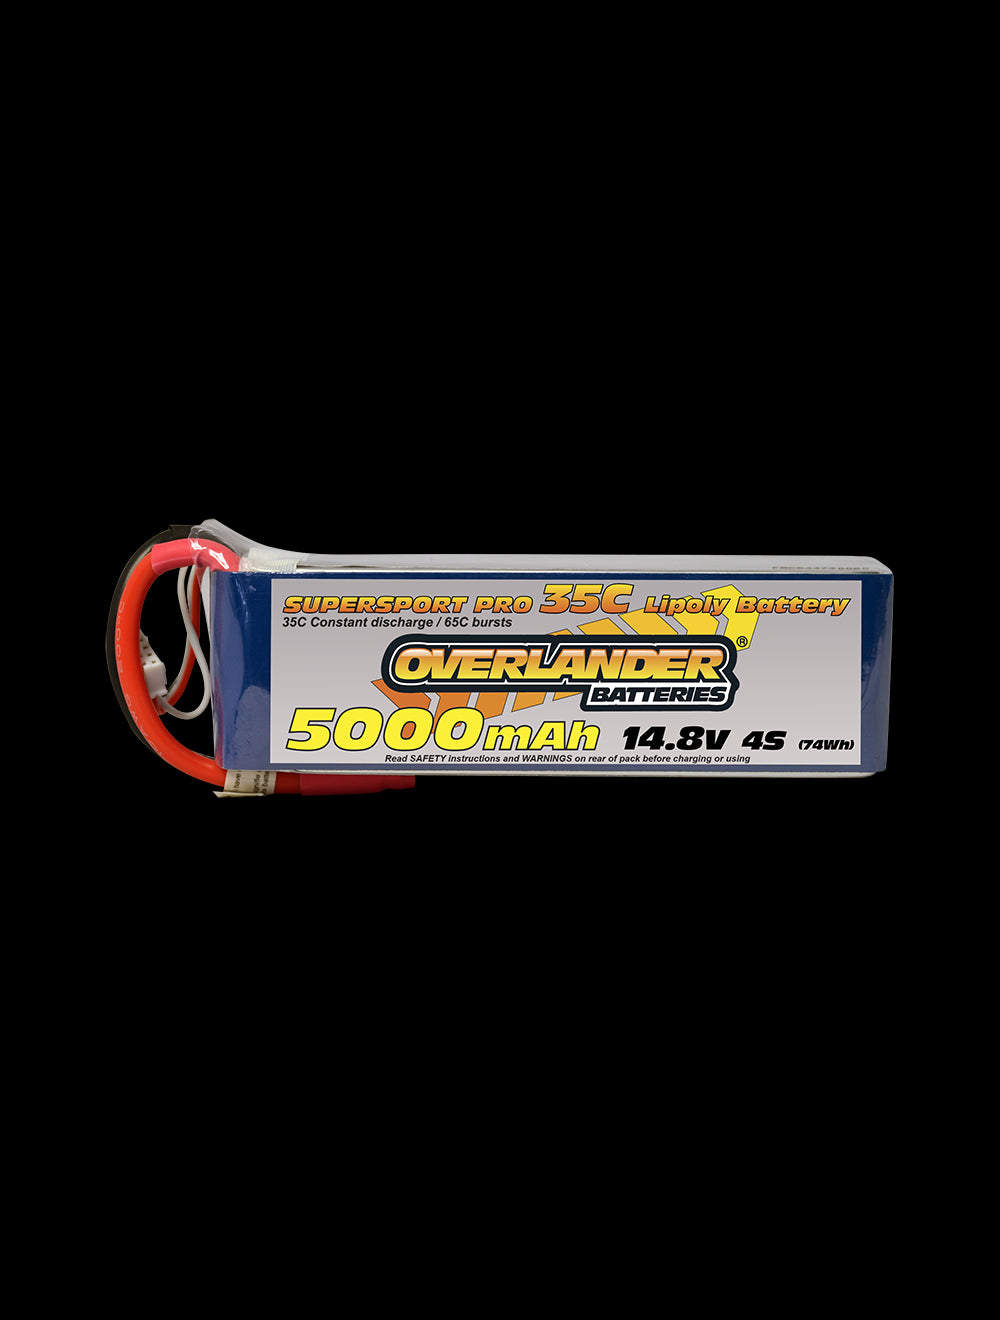 Overlander 5000mAh 14.8V 4S 35C Supersport Pro LiPo Battery - Deans Connector 2578